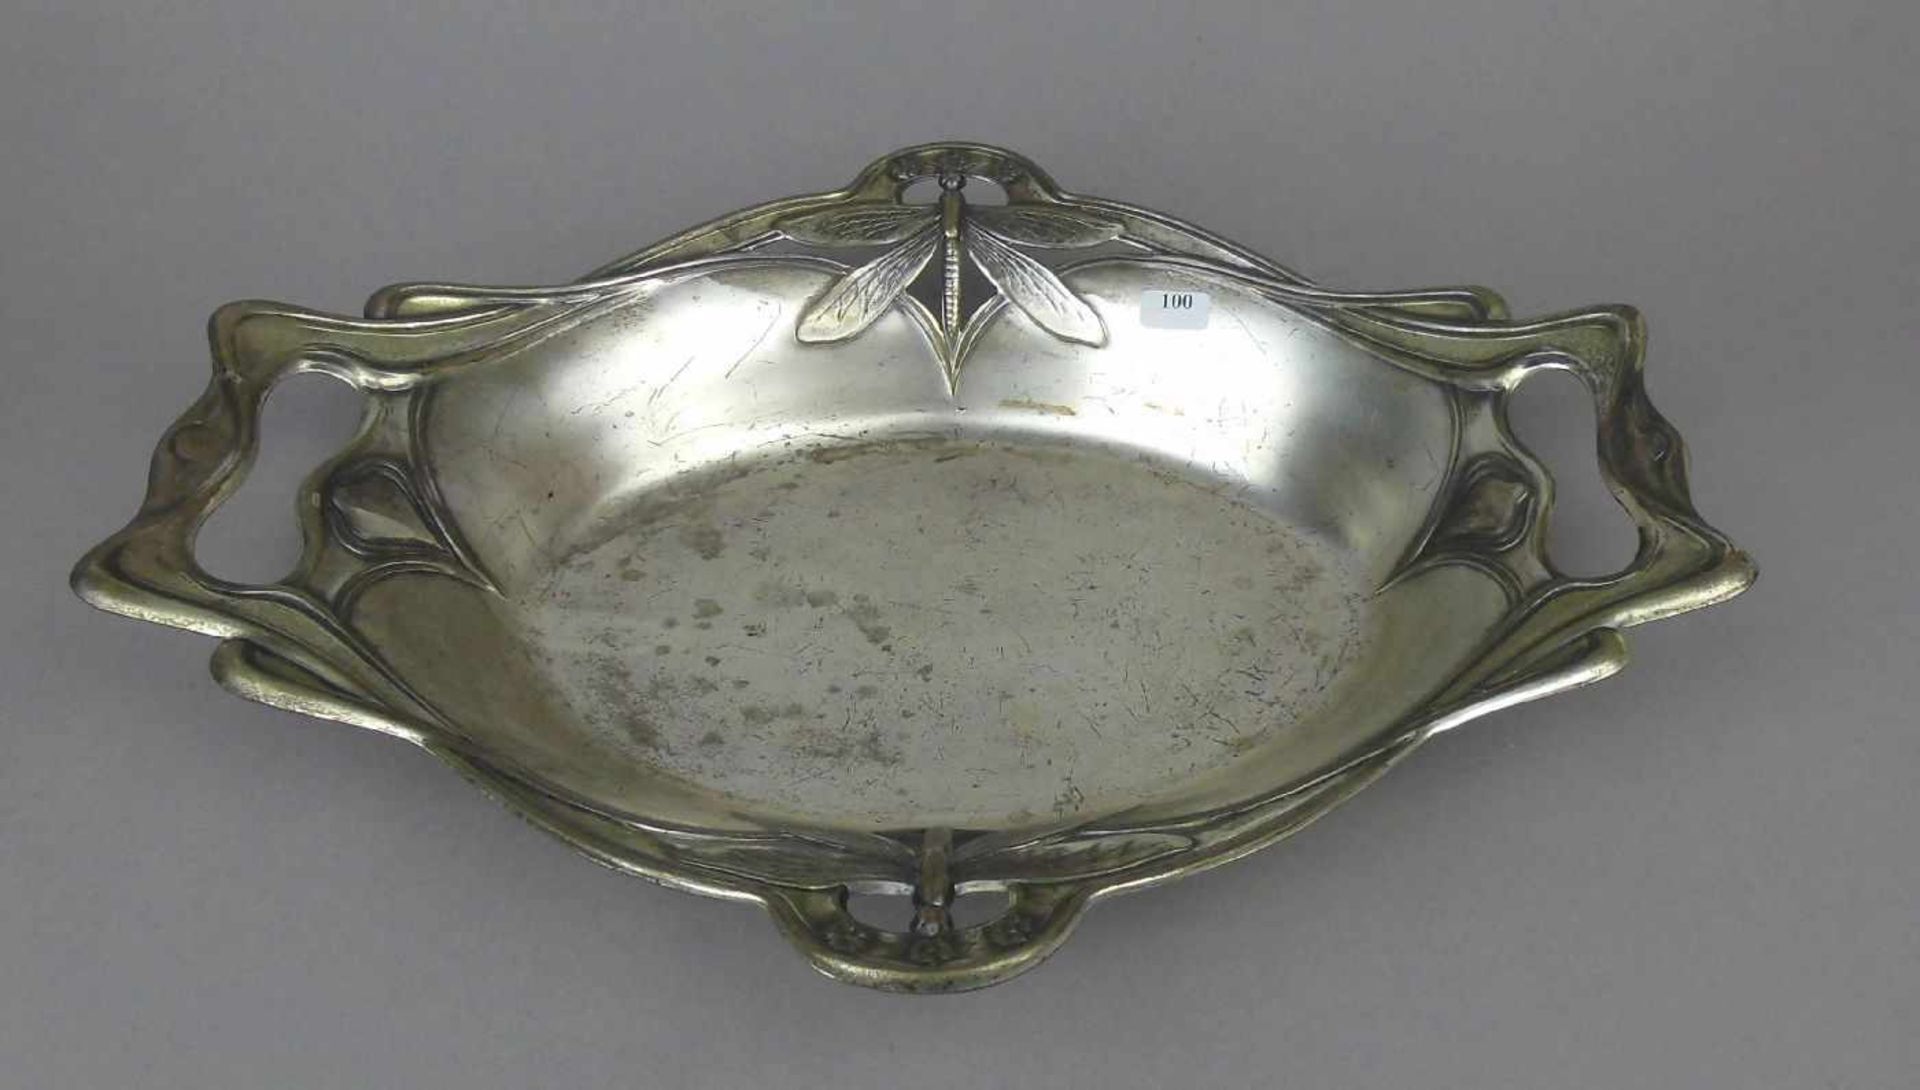 JUGENDSTILSCHALE MIT LIBELLENMOTIV, art nouveau bowl with dragonfly, versilbertes Metall ( - Image 2 of 3